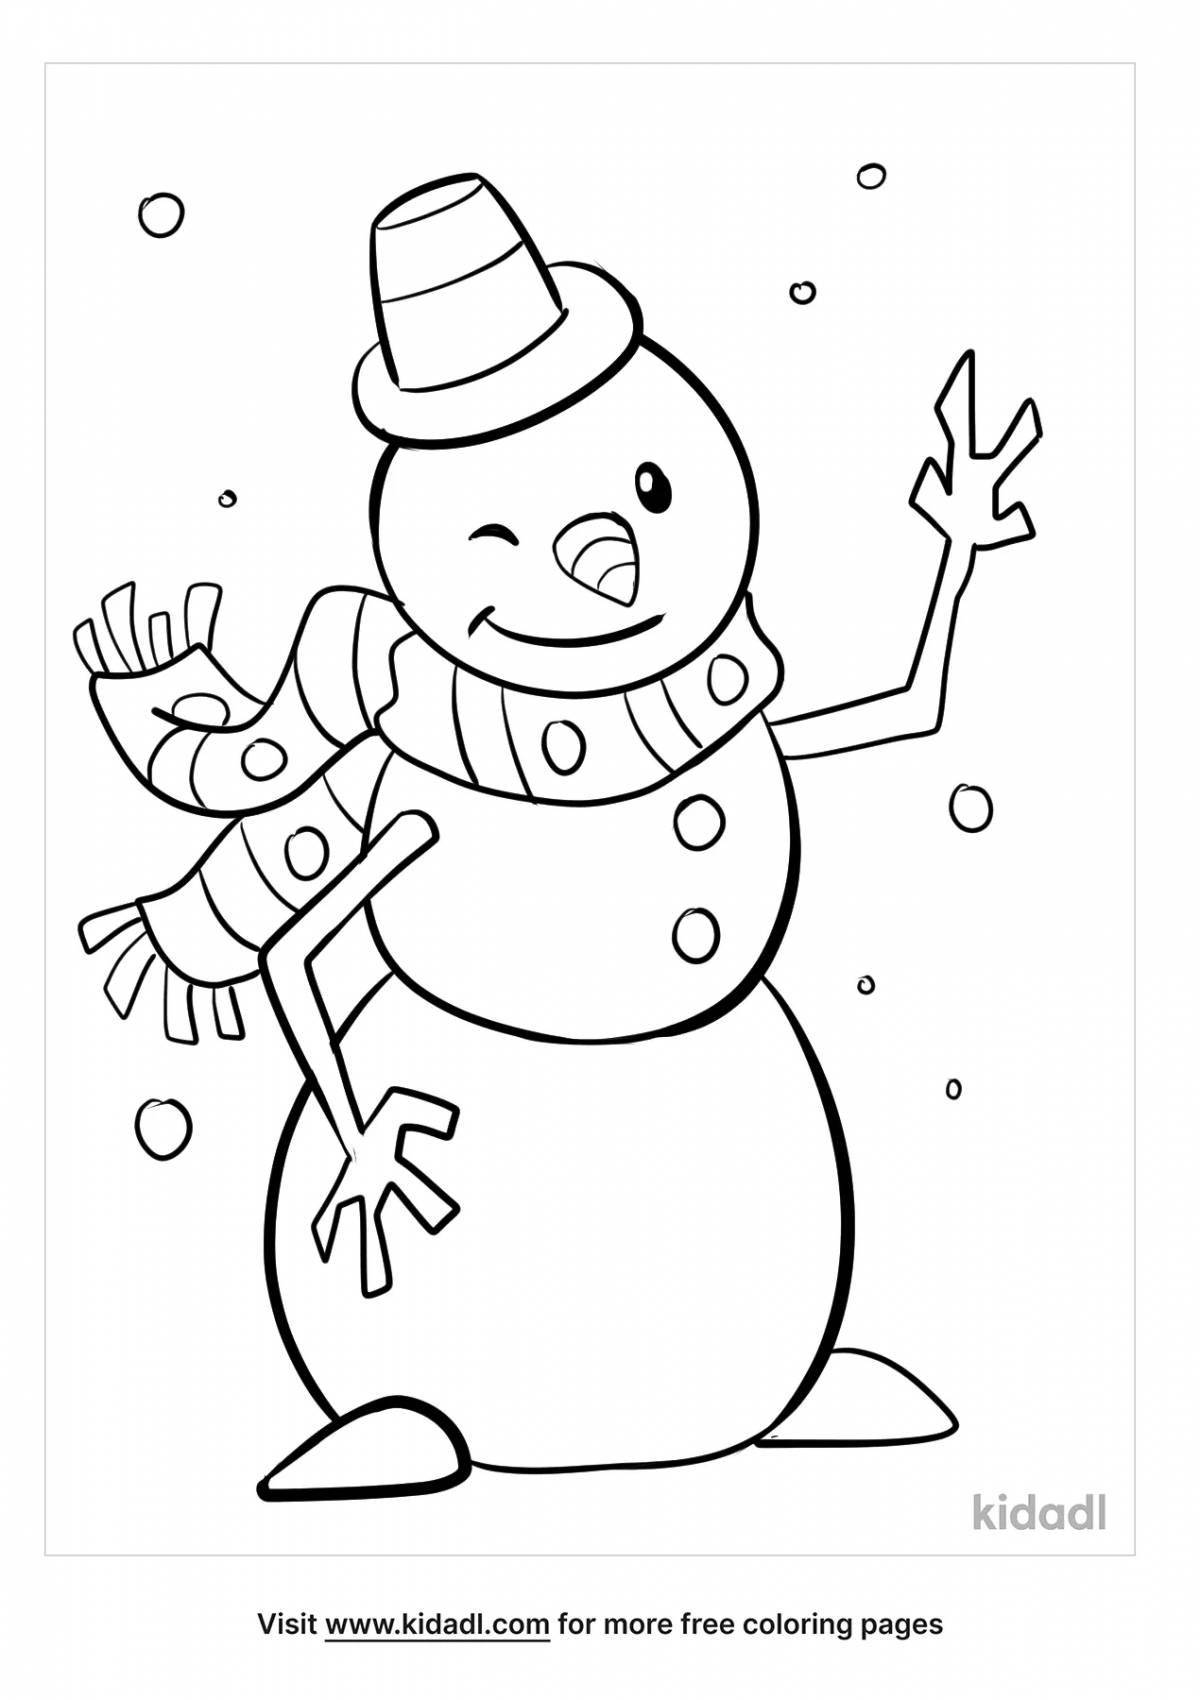 Magic coloring snowman